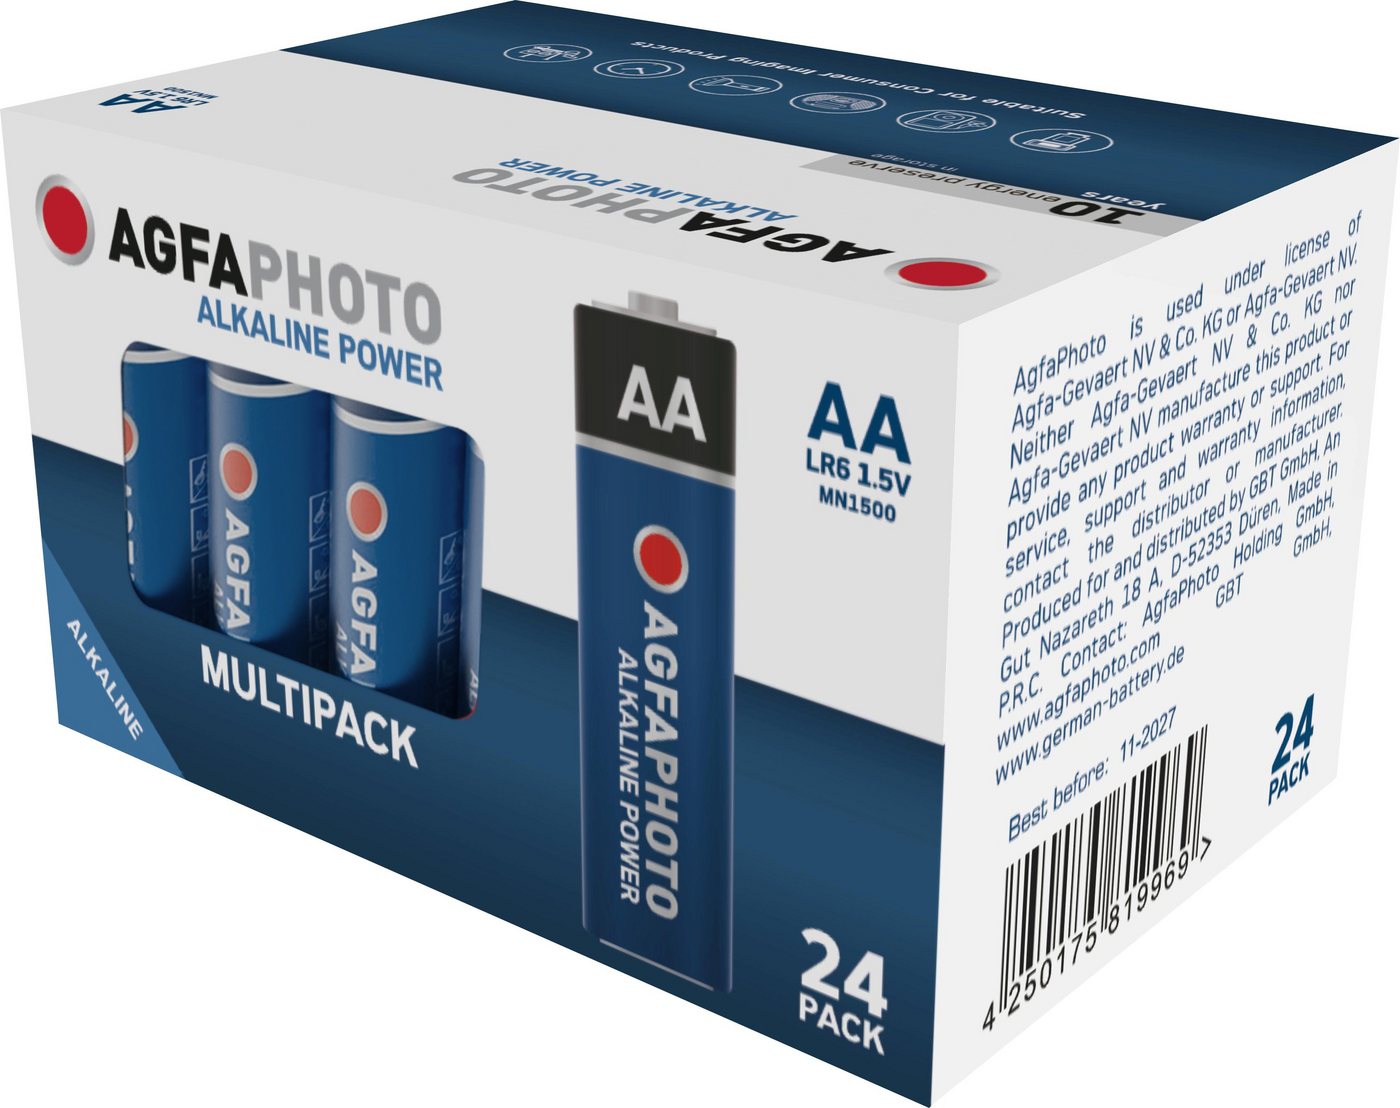 AgfaPhoto Agfaphoto Batterie Alkaline, Mignon, AA, LR06, 1.5V Power, Retail Box Batterie von AgfaPhoto